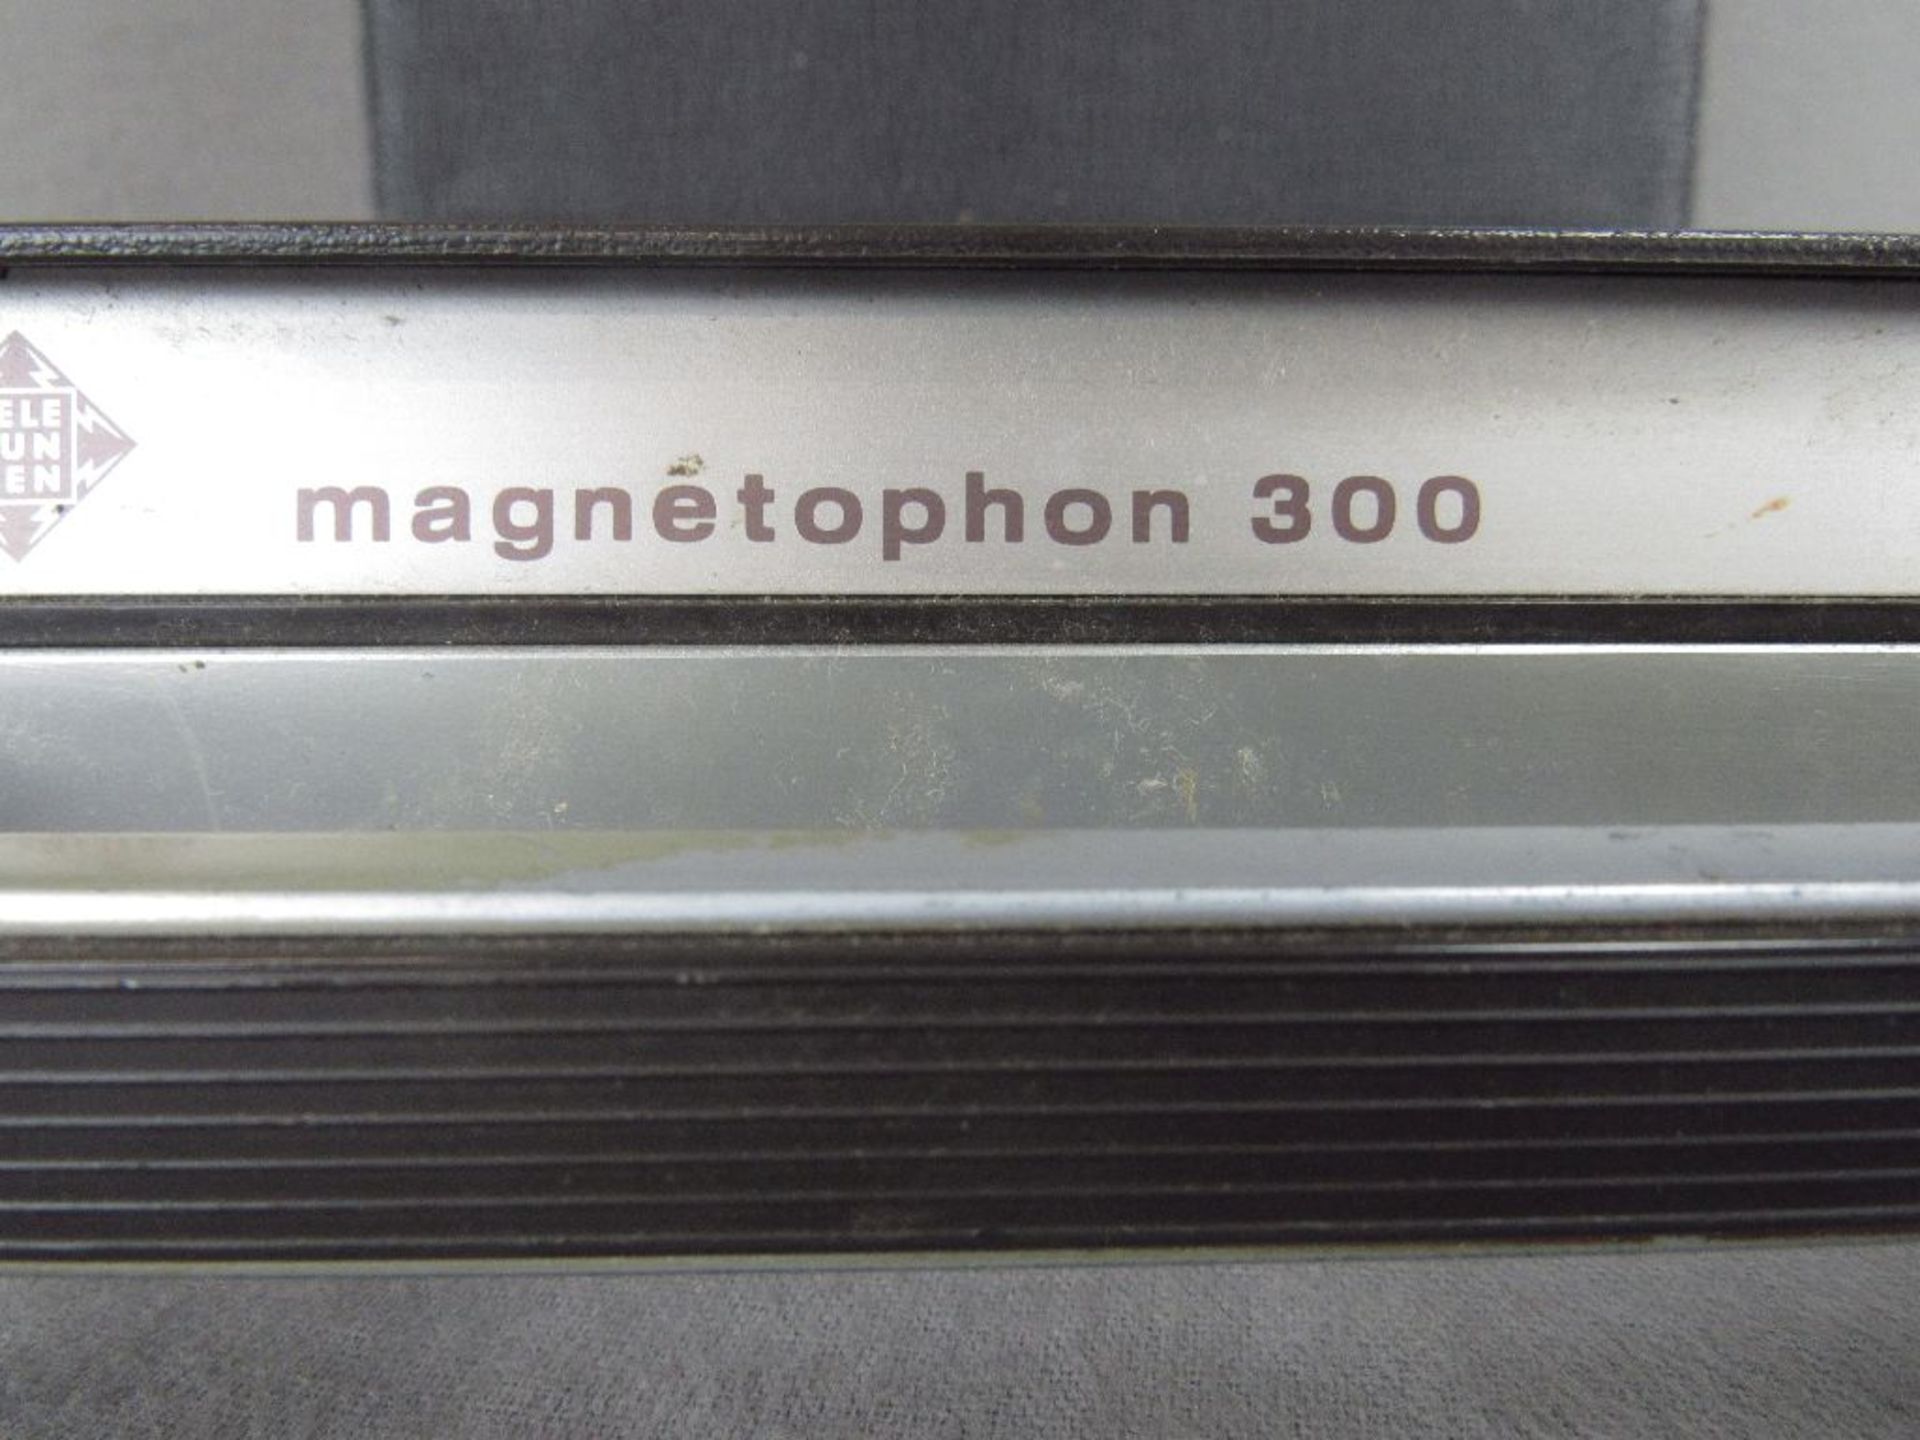 Vintage 70er Jahre mobiles telefunken Tonbandgerät Magnetofon 300 - Image 5 of 6